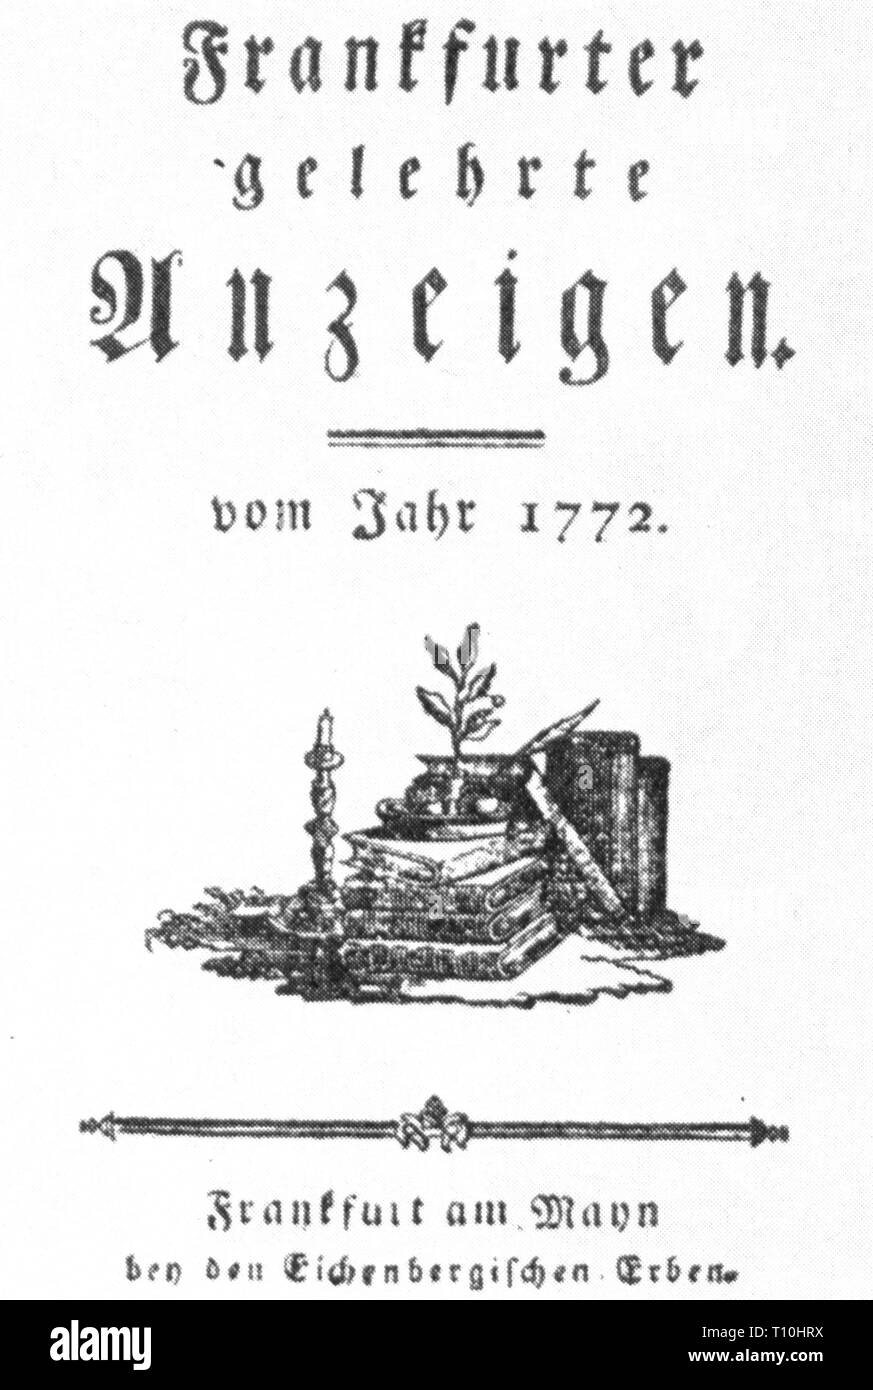 Premere il tasto / media, riviste, 'Frankfurter gelehrte Anzeigen', pagina titolo, Francoforte, 1772, artista del diritto d'autore non deve essere cancellata Foto Stock